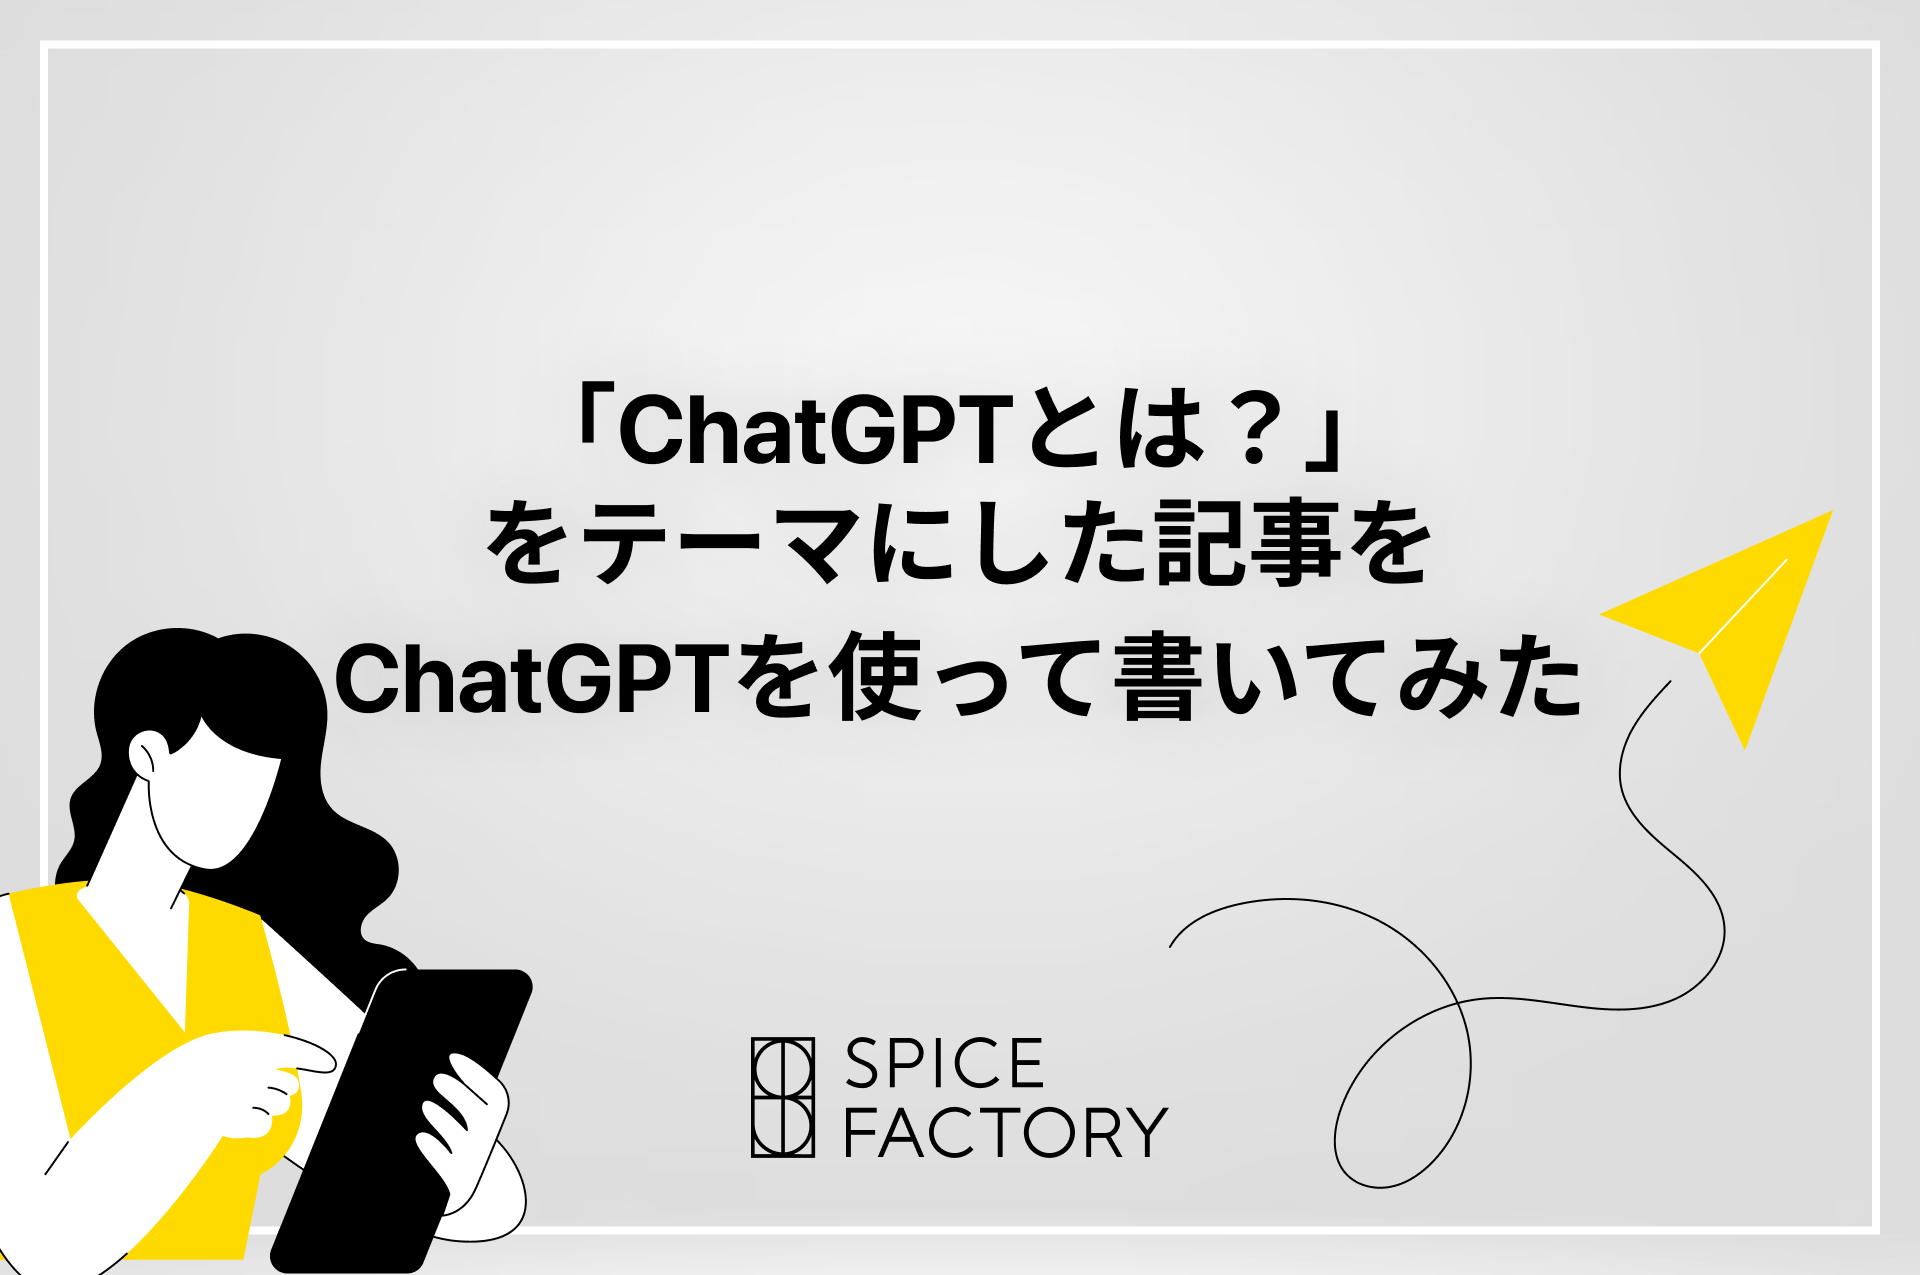 「ChatGPTとは？」をテーマにした記事をChatGPTを使って書いてみた